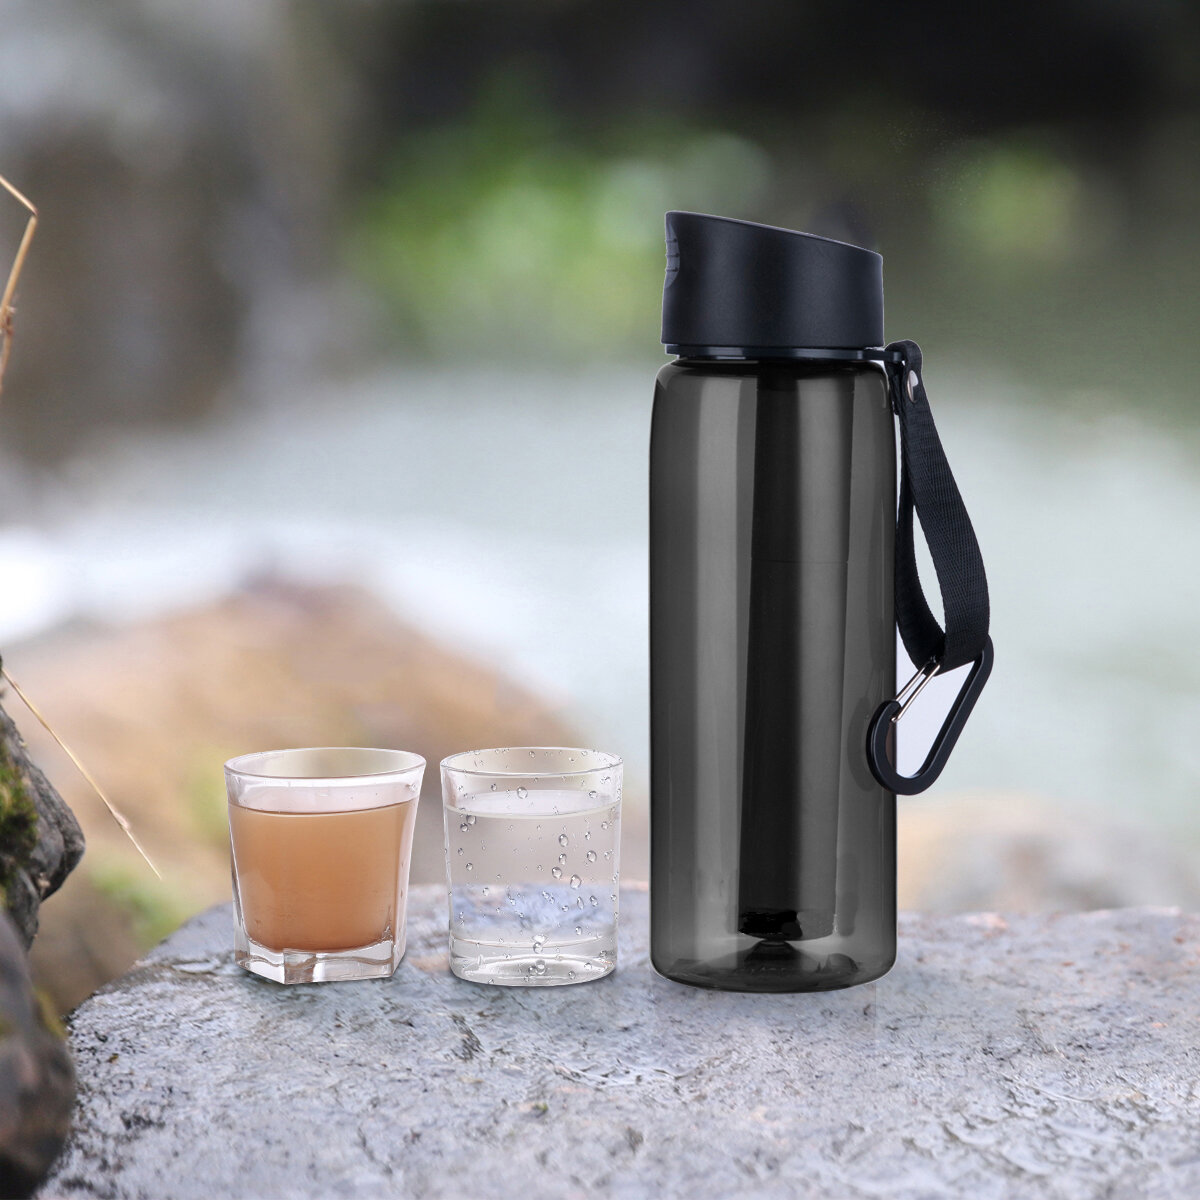 IPRee® Woda oczyszczająca butelka 2-stopniowy filtr wody Kubek oczyszczający wodę dla awaryjnego słomki do turystyki pieszej, wędrówki z plecakiem, podróży, kempingu i narzędzi do przetrwania